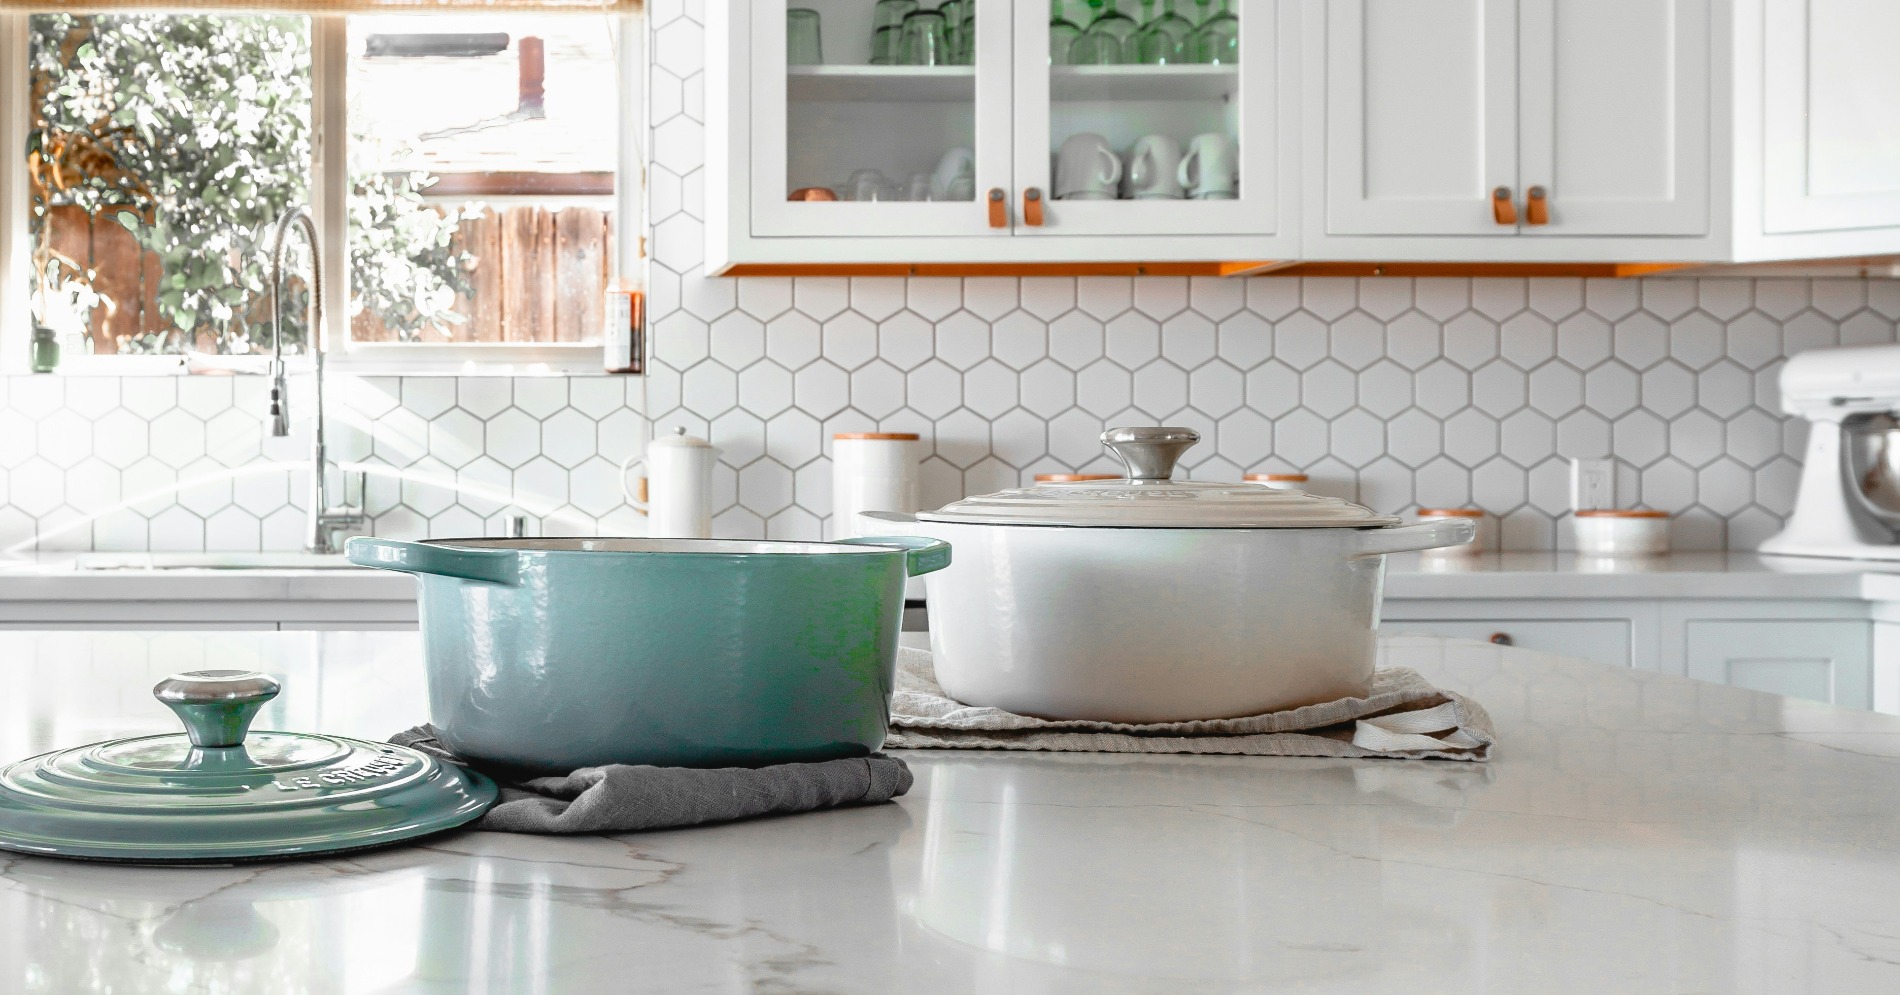 Meja dapur granit putih (Sumber foto: Unsplash)